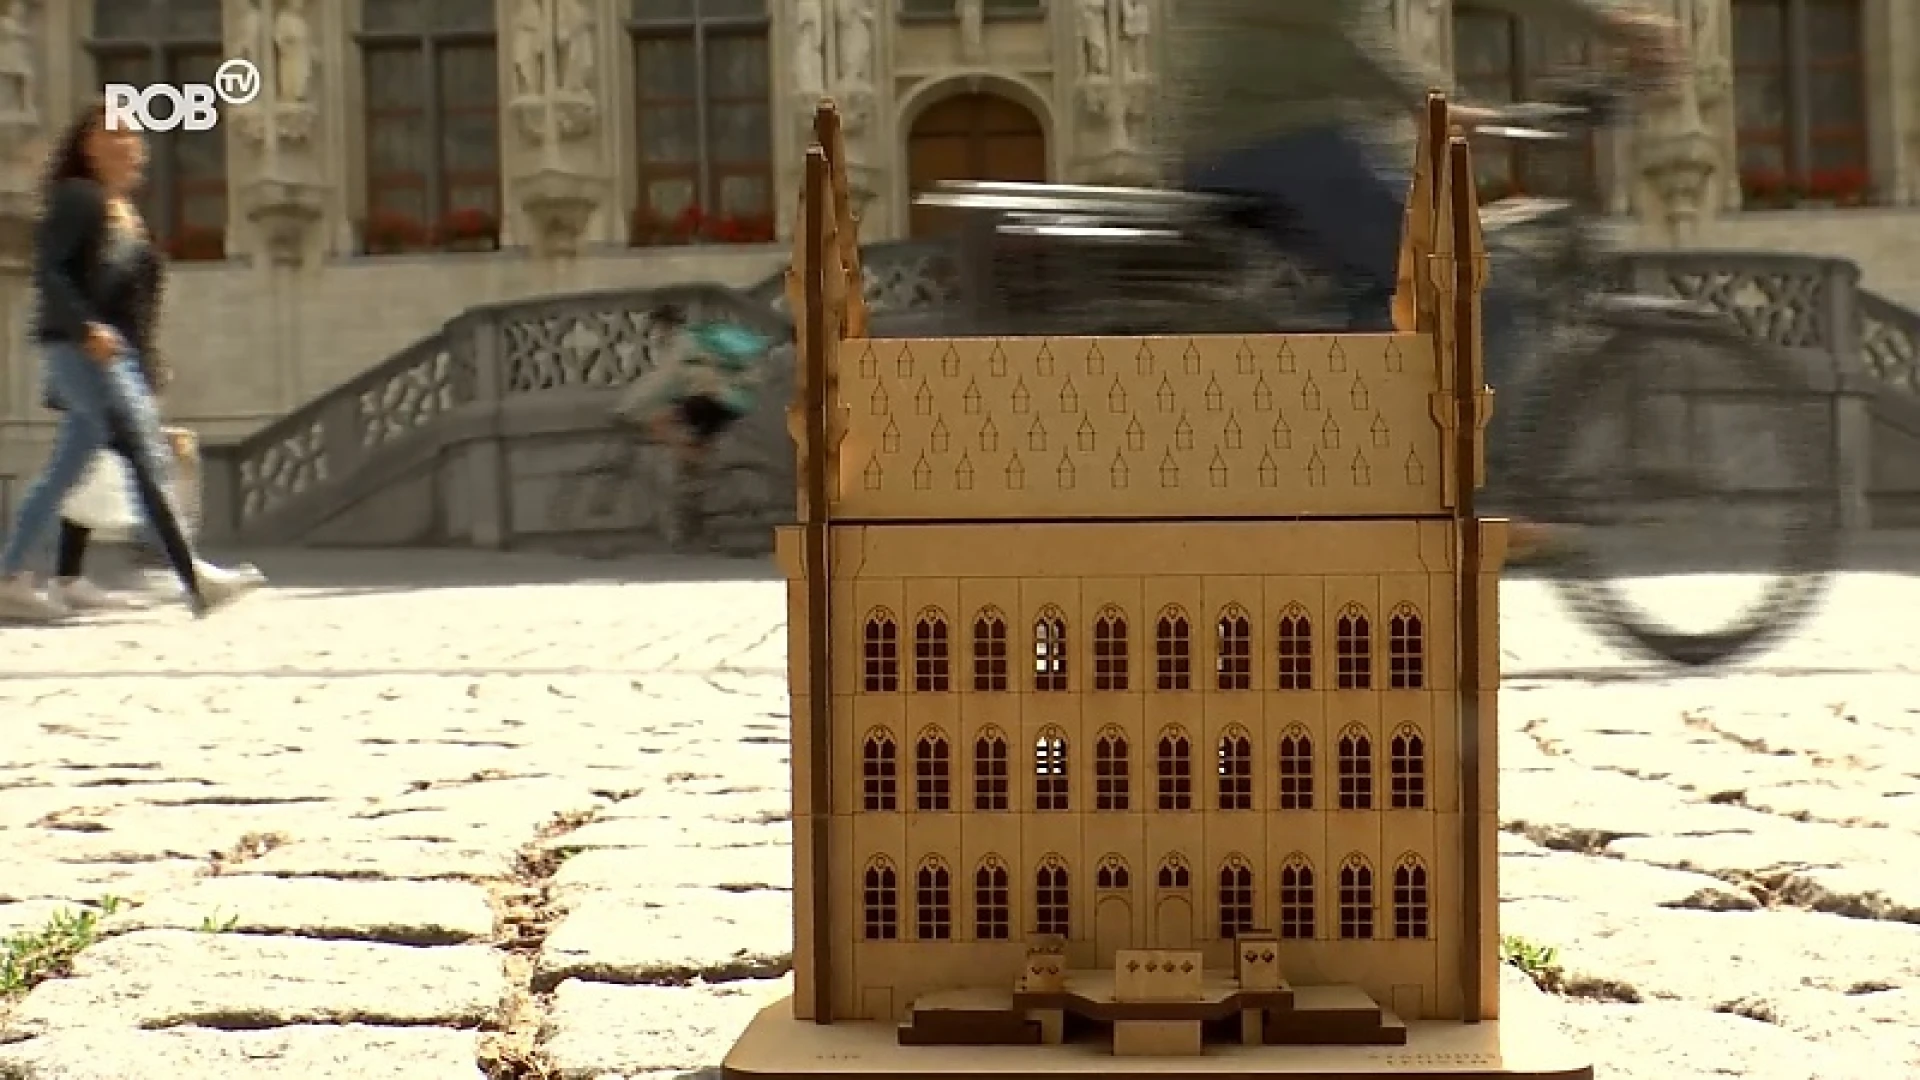 Miniatuurversie stadhuis Leuven te koop vanaf vrijdag, wel maar 100 stuks: "Echt een collector's item"